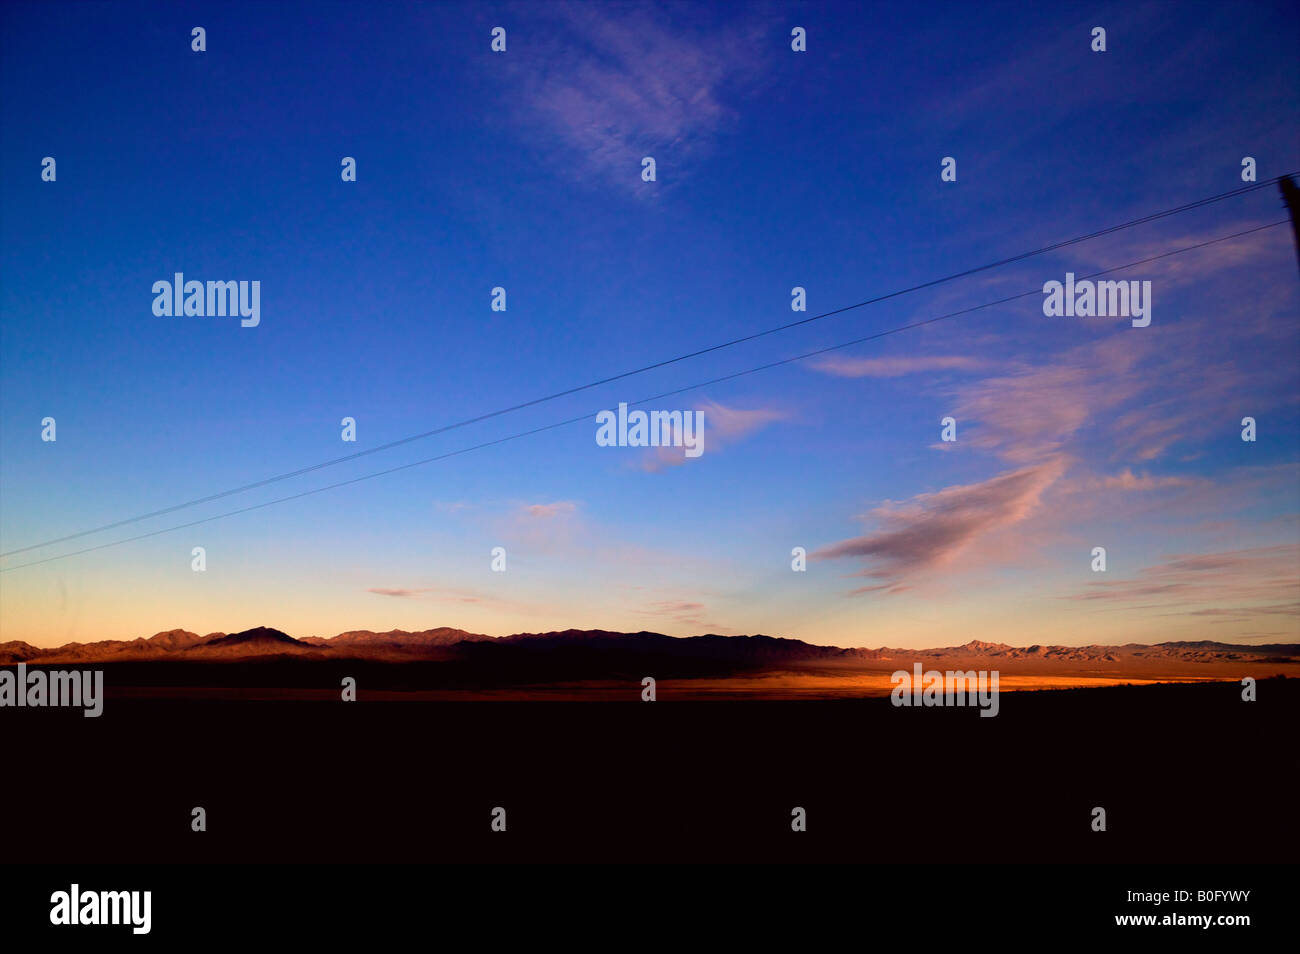 Mojave-Wüstenlandschaft California sunset große Freifläche in Wüste unter offenem Himmel bei Abenddämmerung Freiheit allein mit Drähten Stockfoto